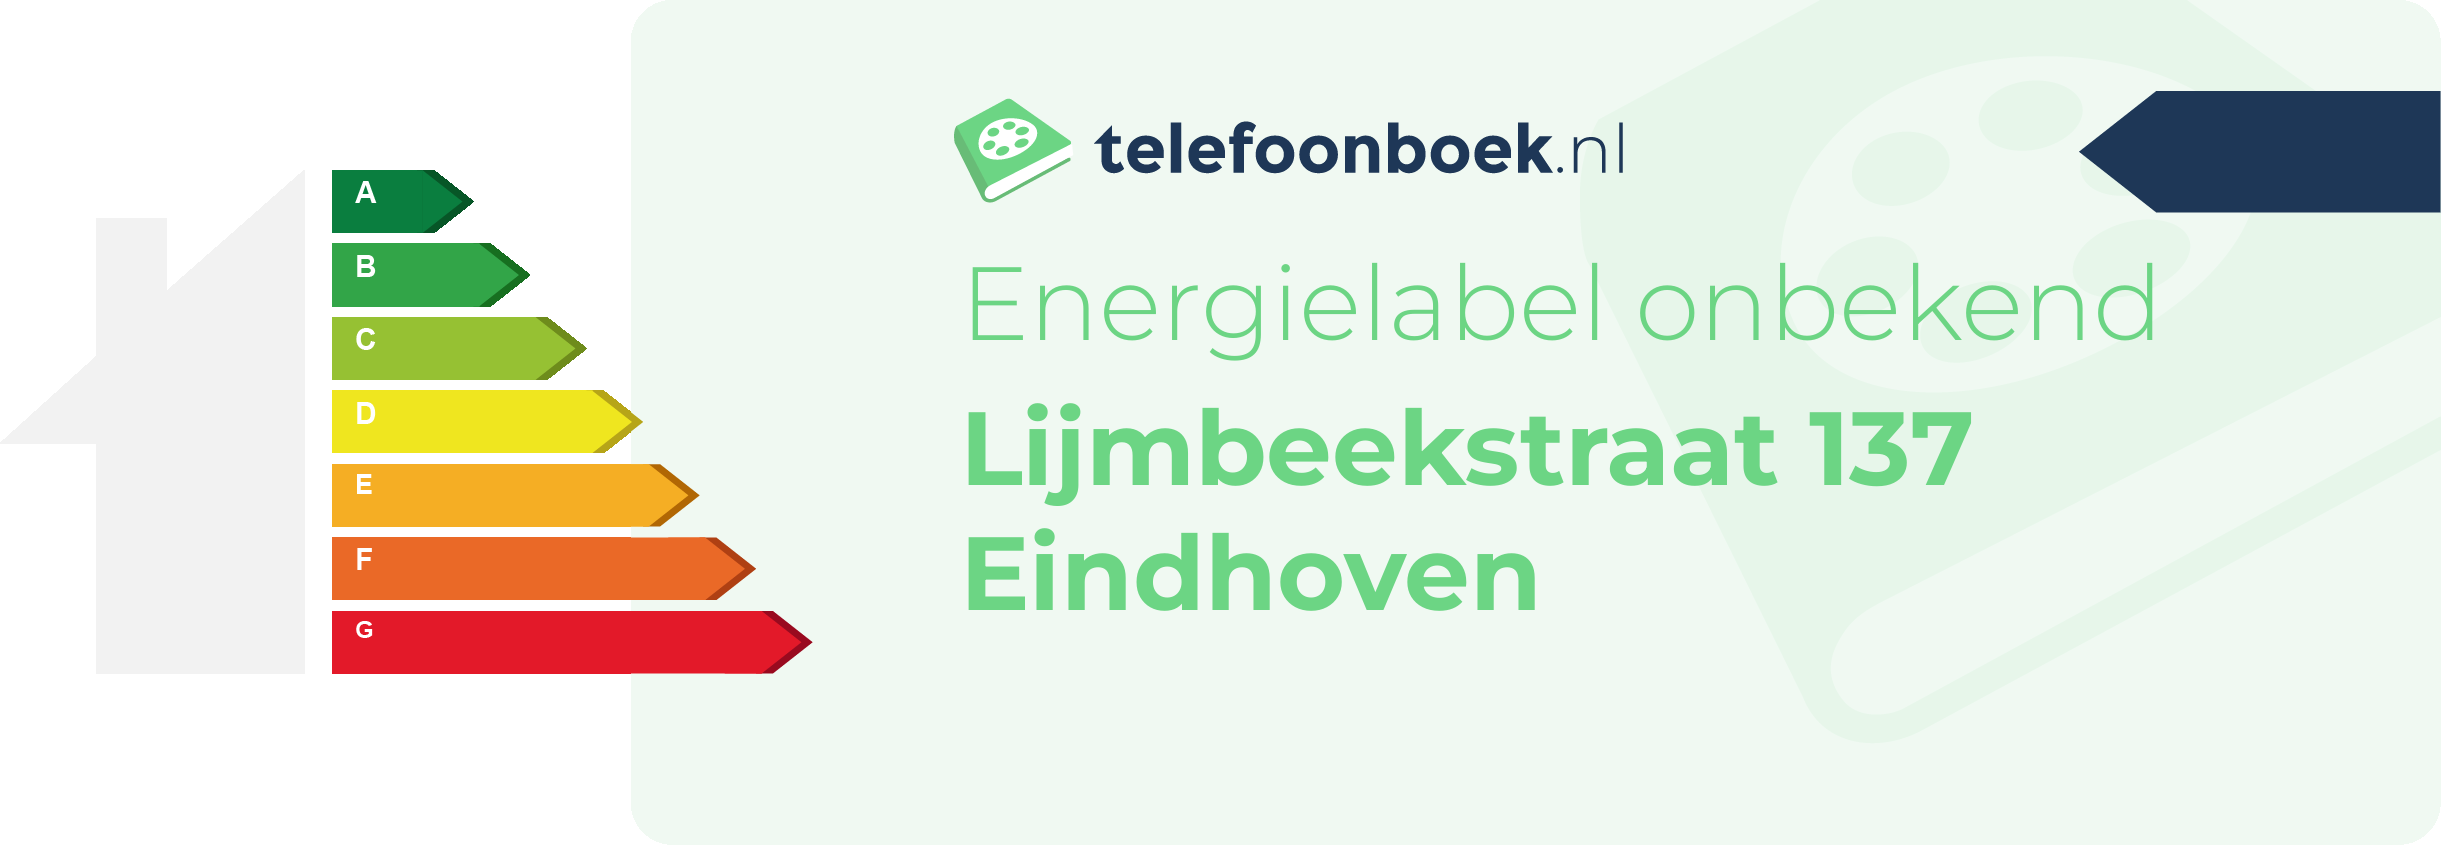 Energielabel Lijmbeekstraat 137 Eindhoven